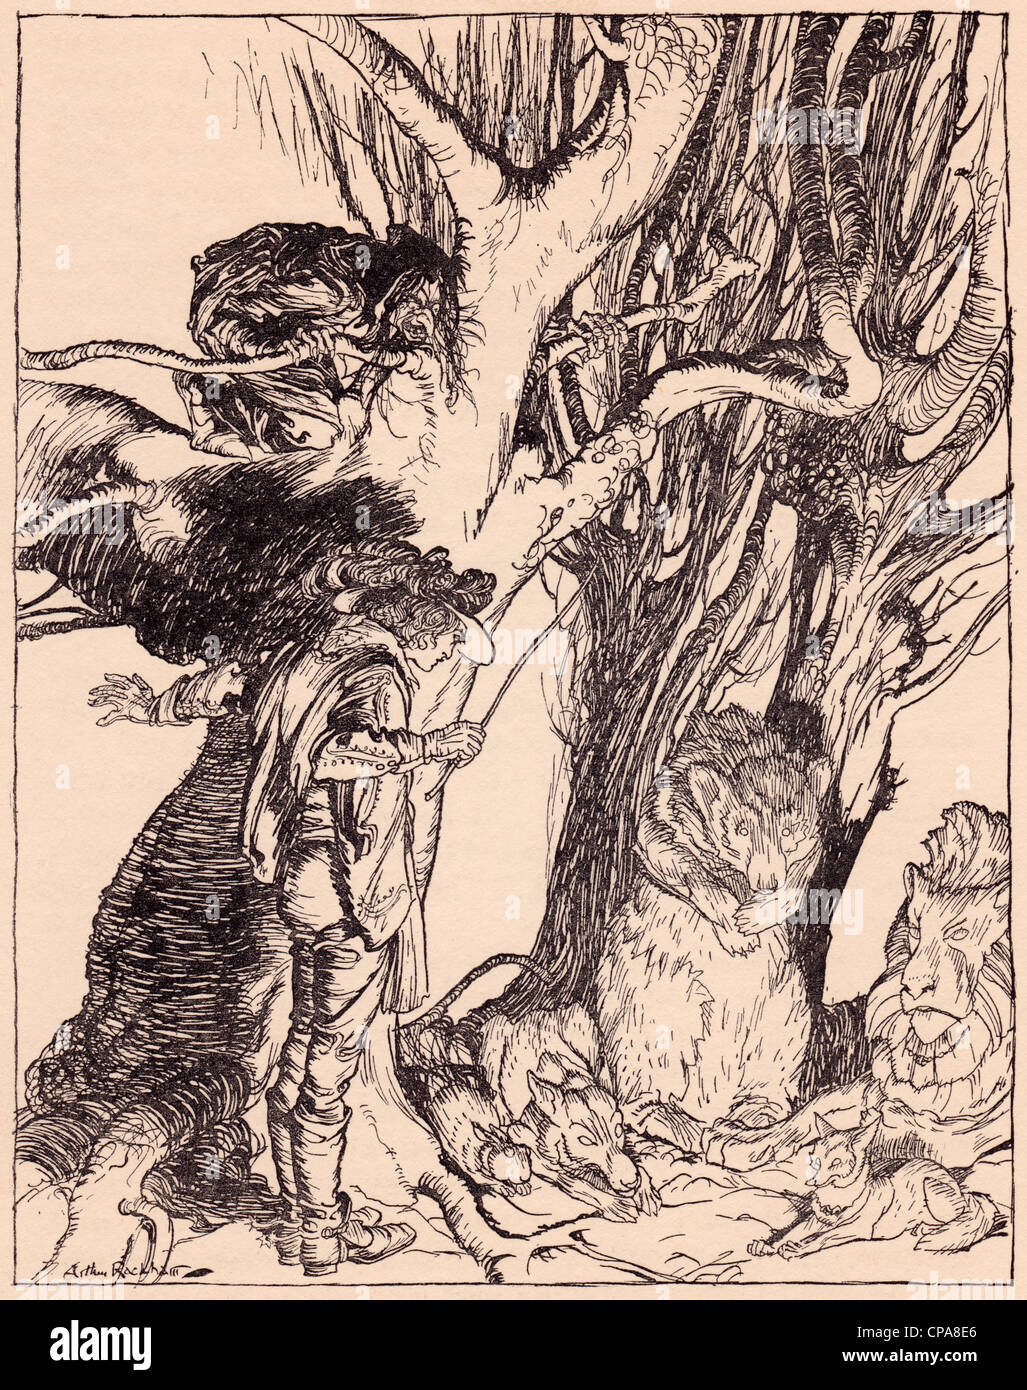 Ils pondent instantanément tous encore transformé en pierre. Illustration par Arthur Rackham le conte de Grimm, les deux frères. Banque D'Images